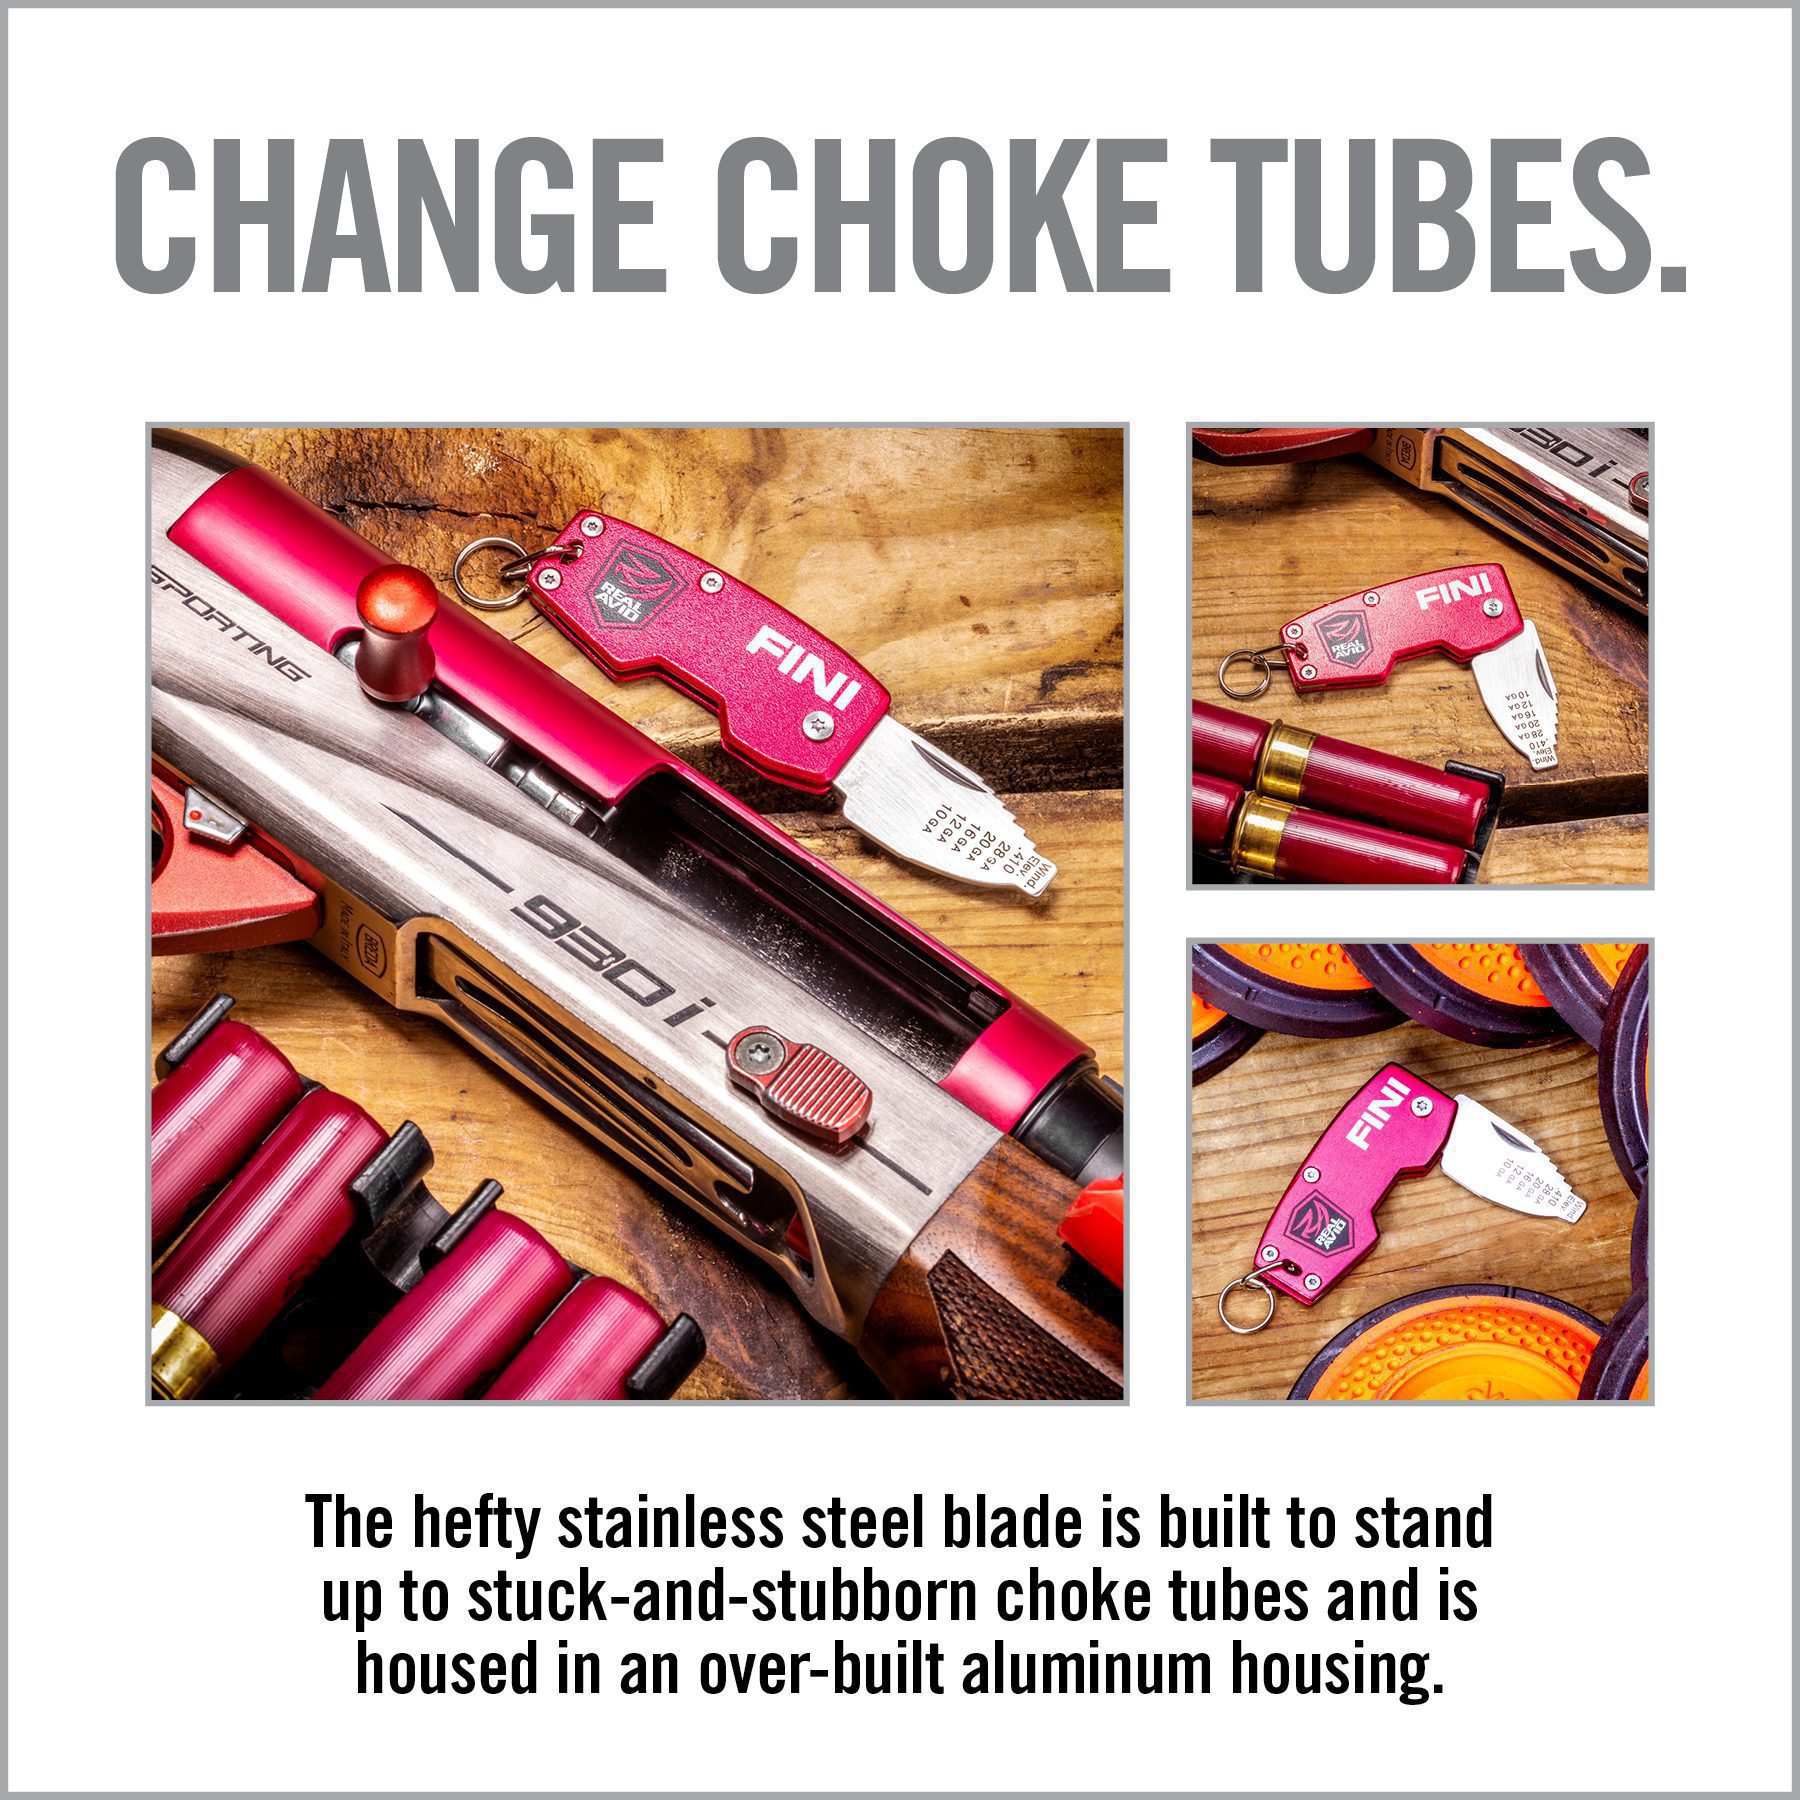 an advertisement for a gun that says change choke tubes